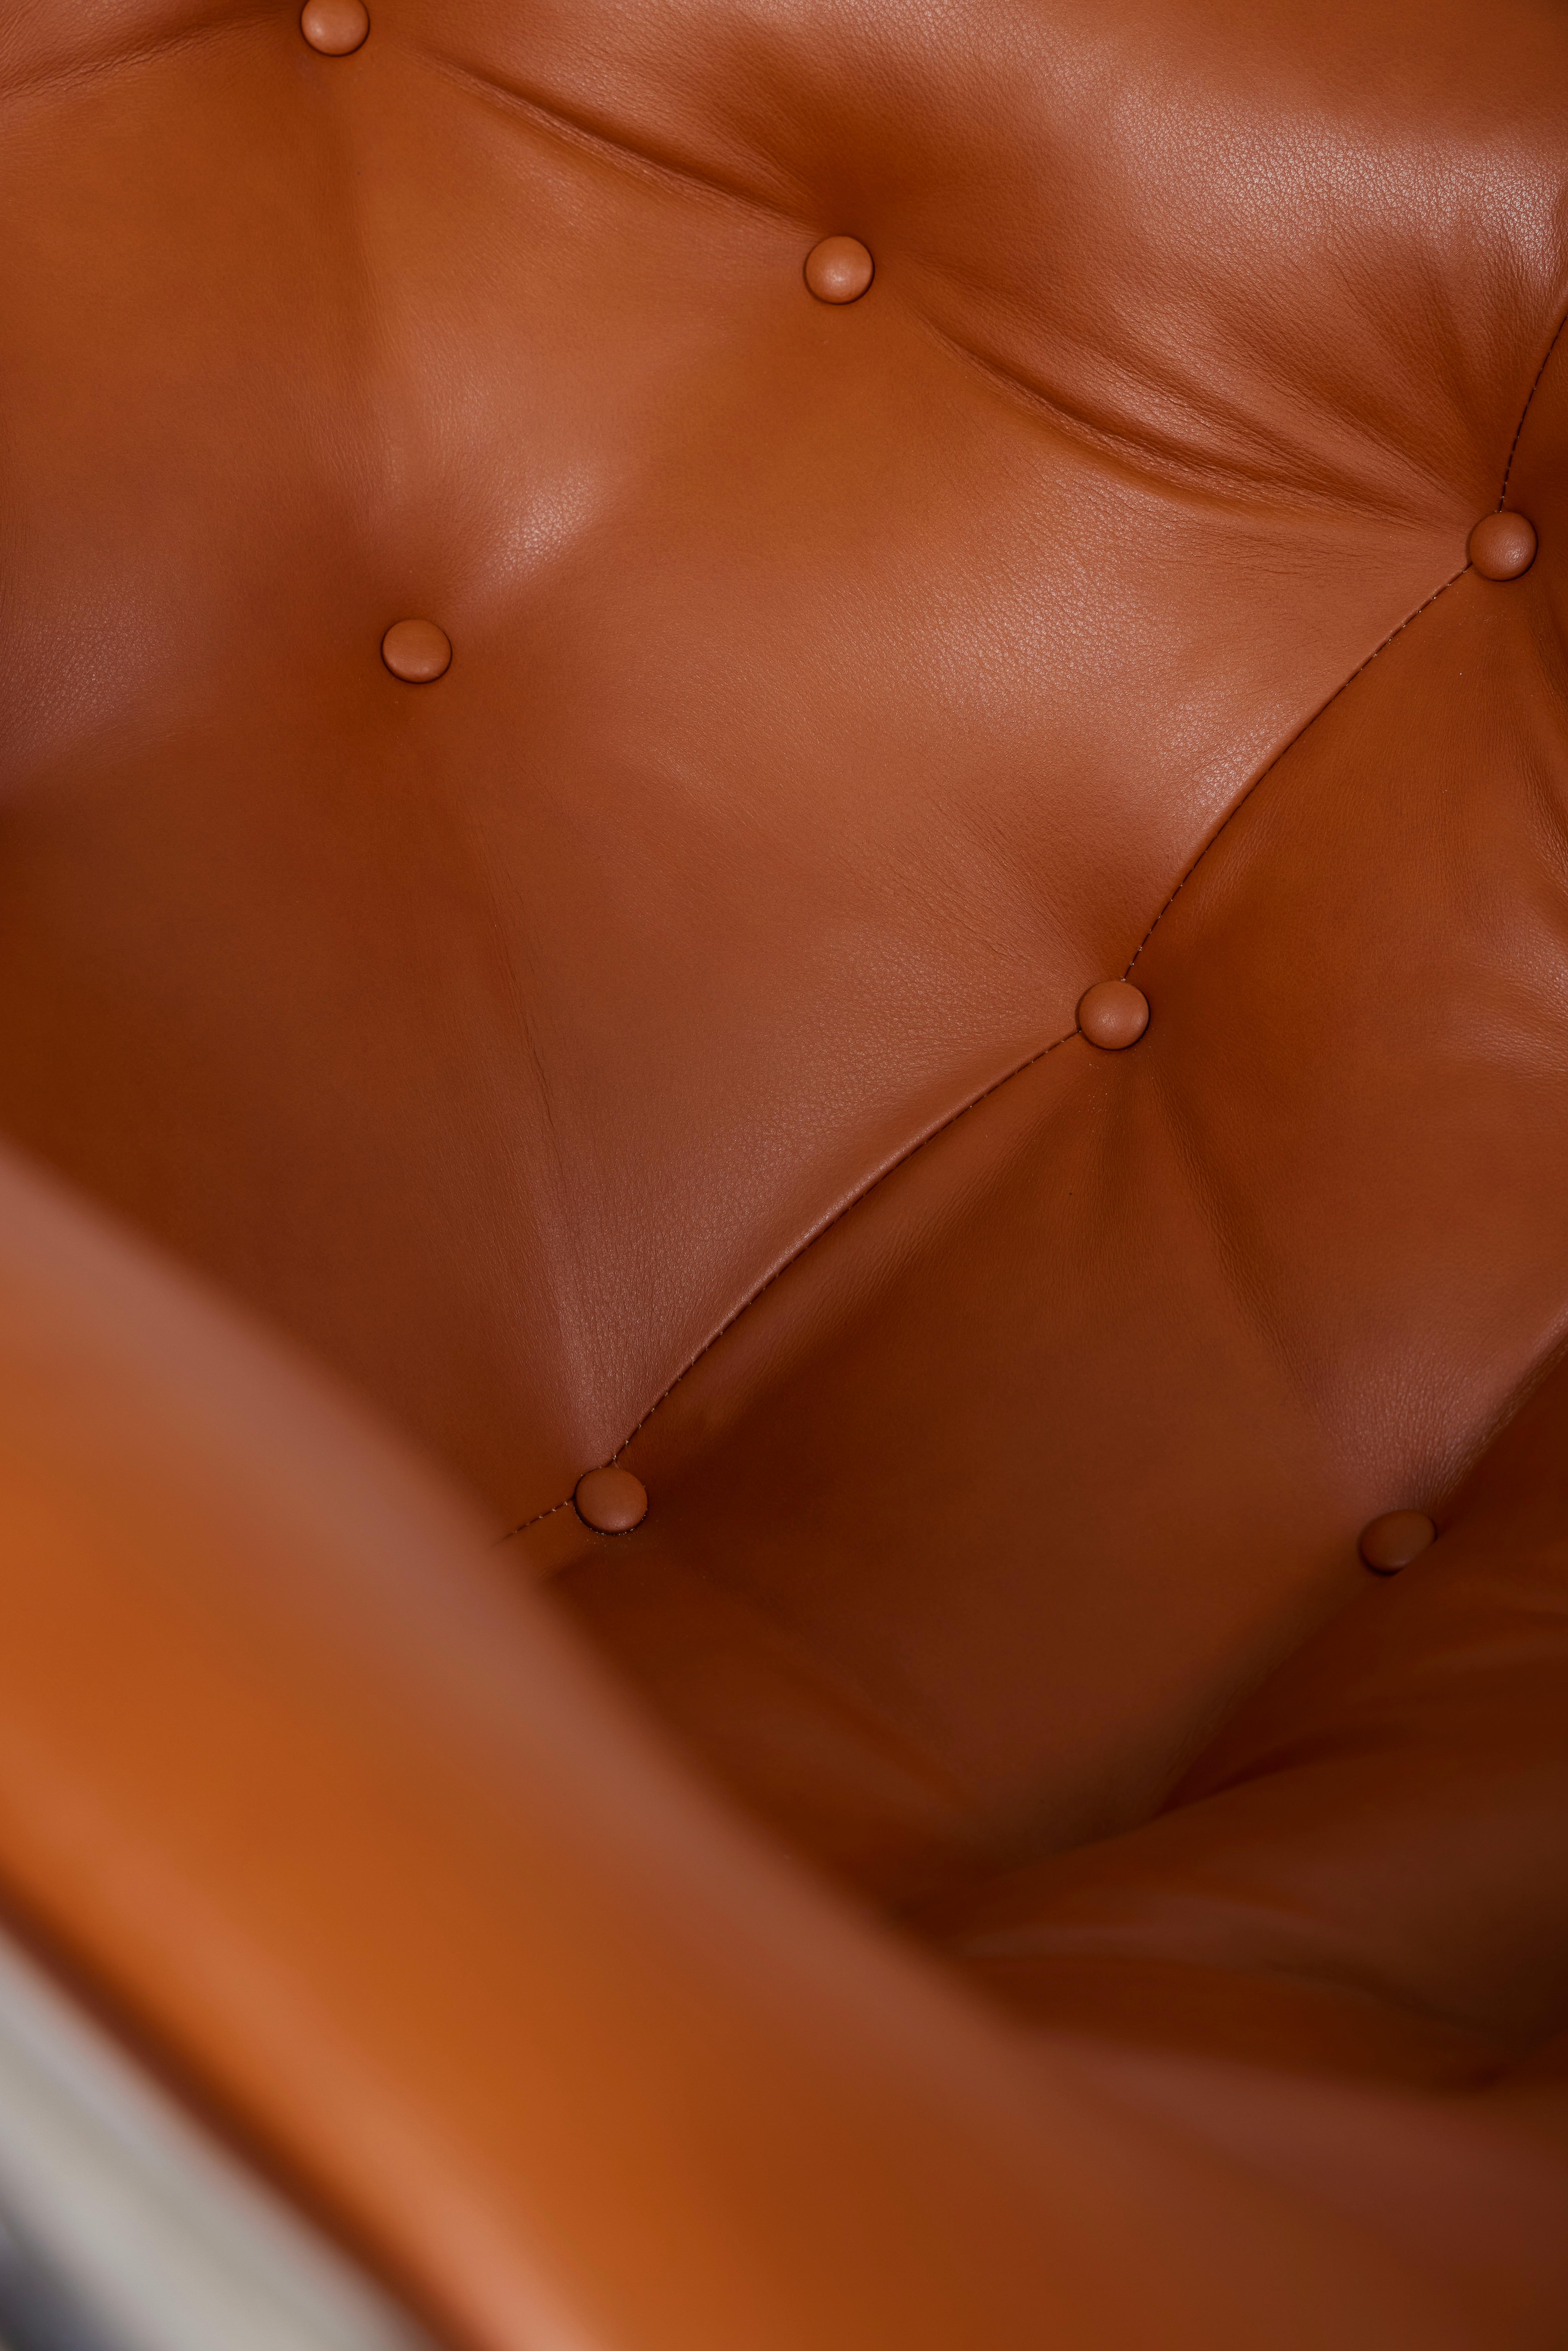 Leather armchair 